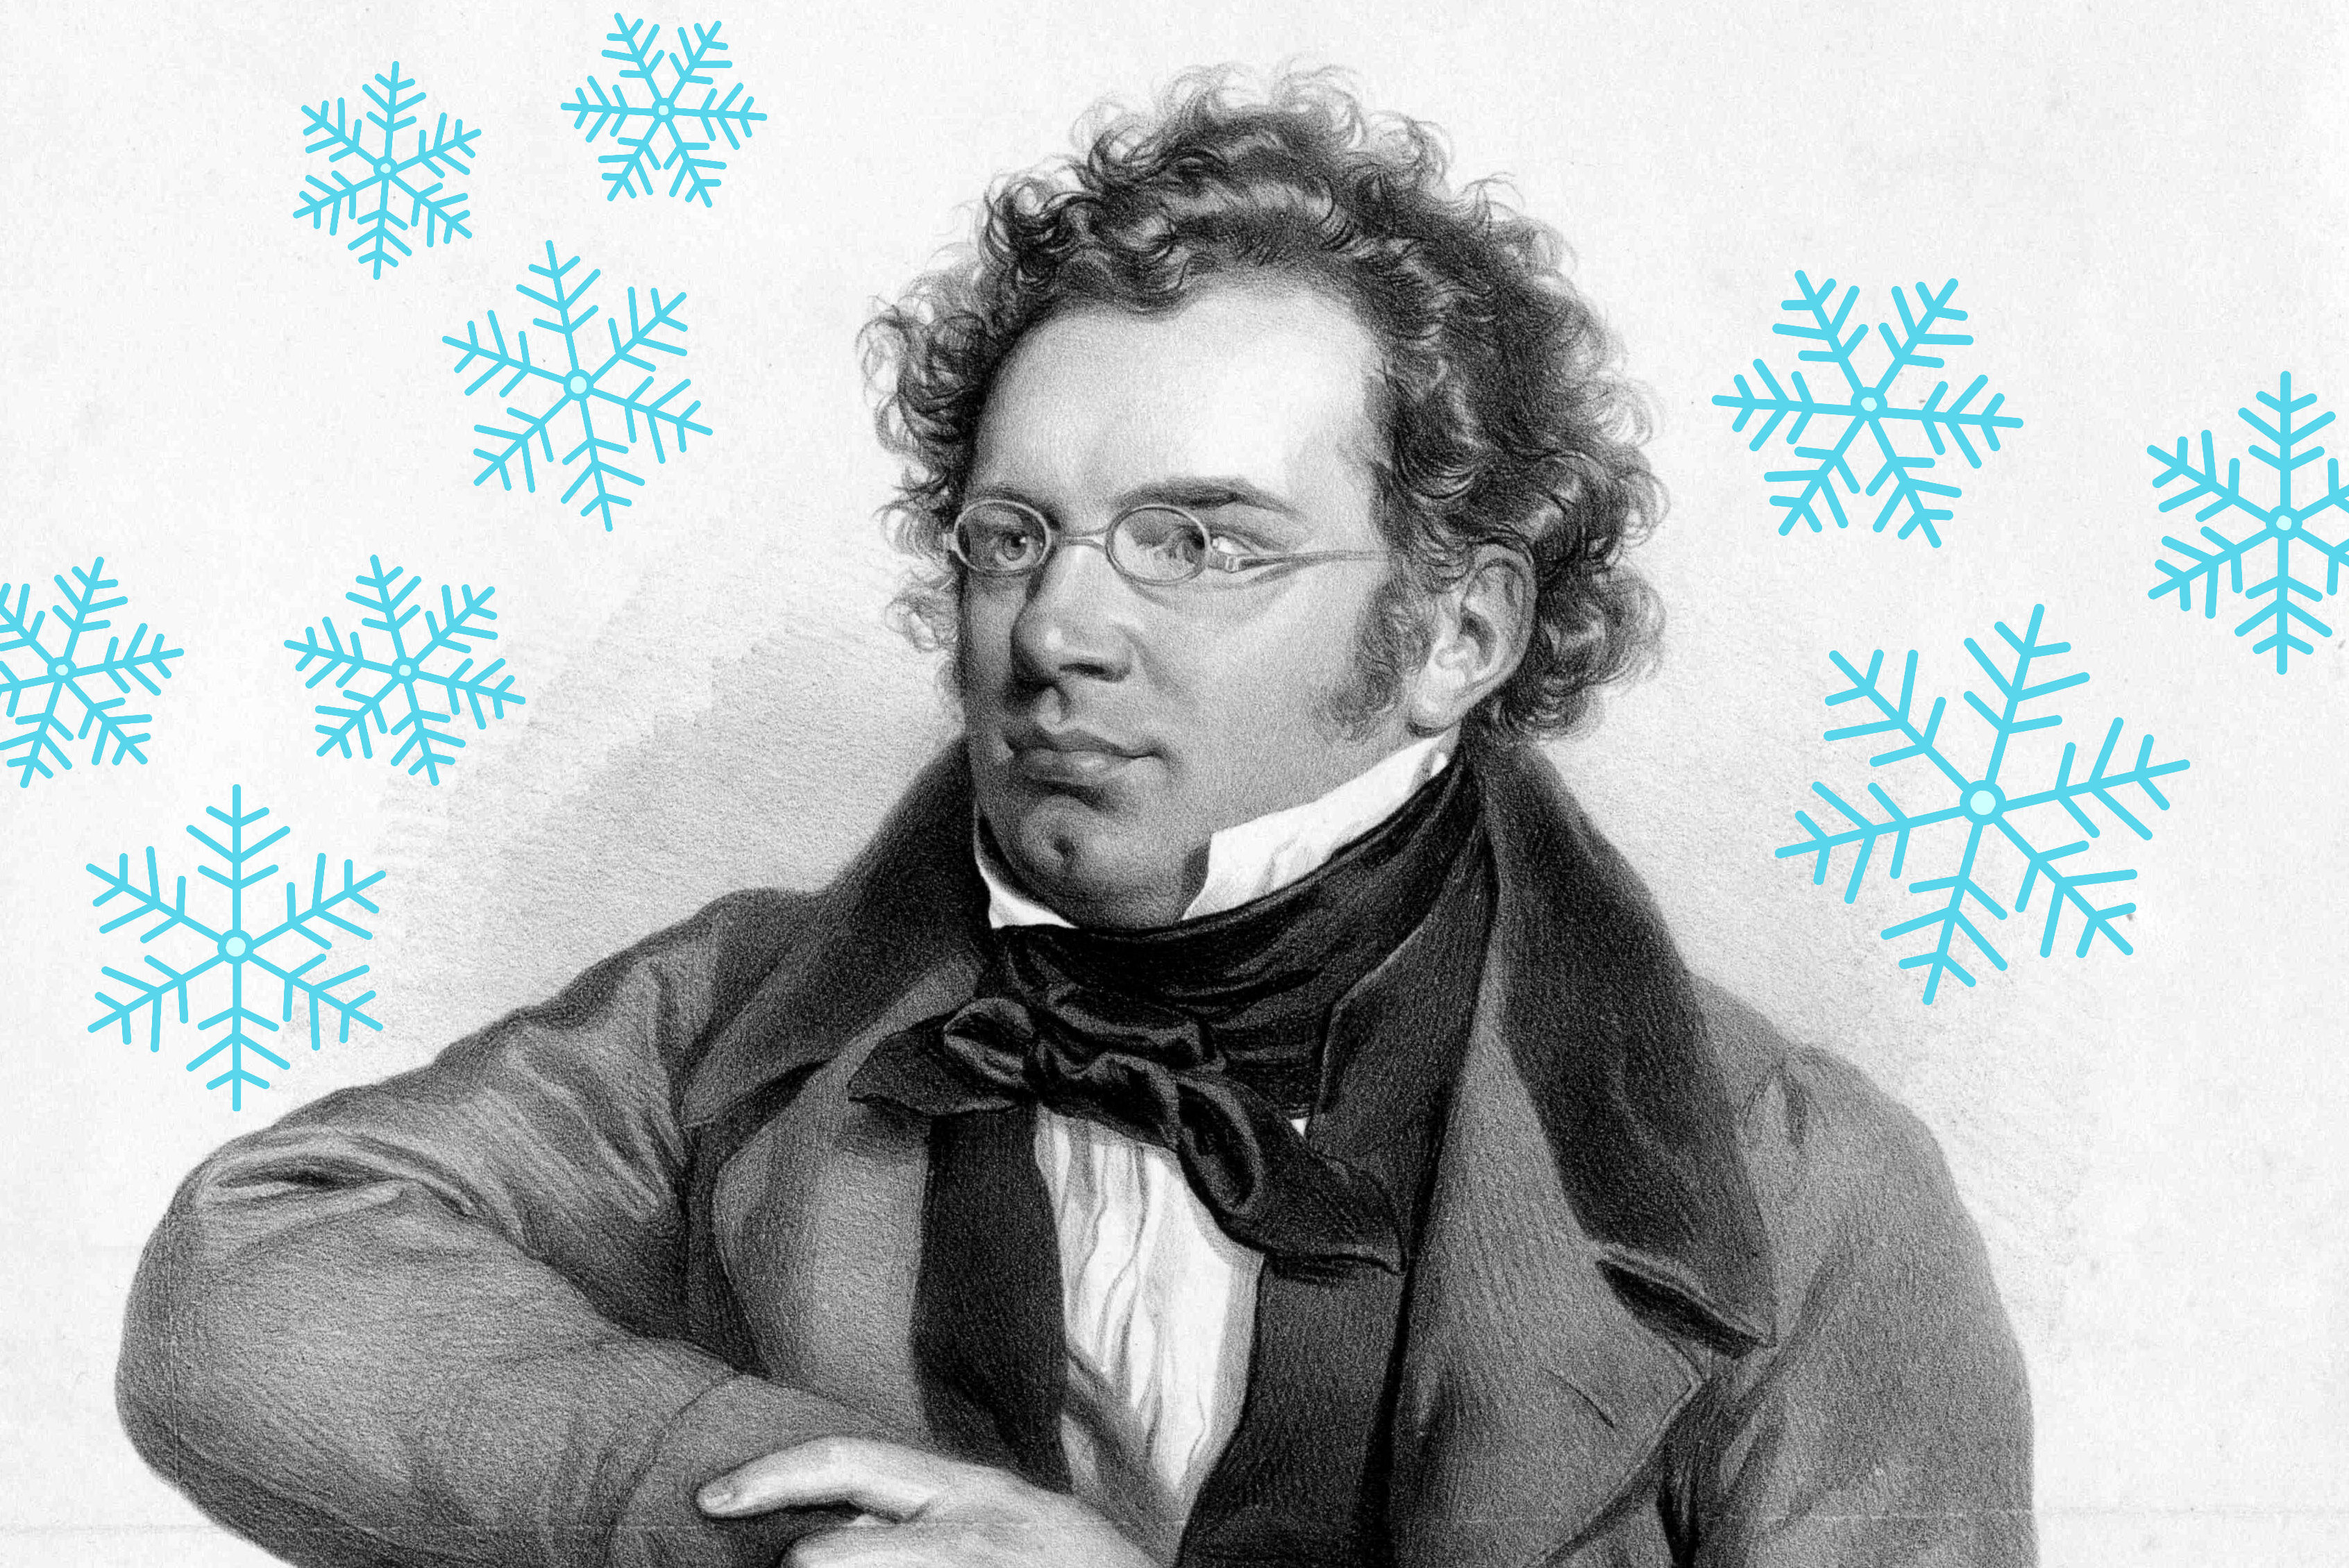 Snowing on Schubert